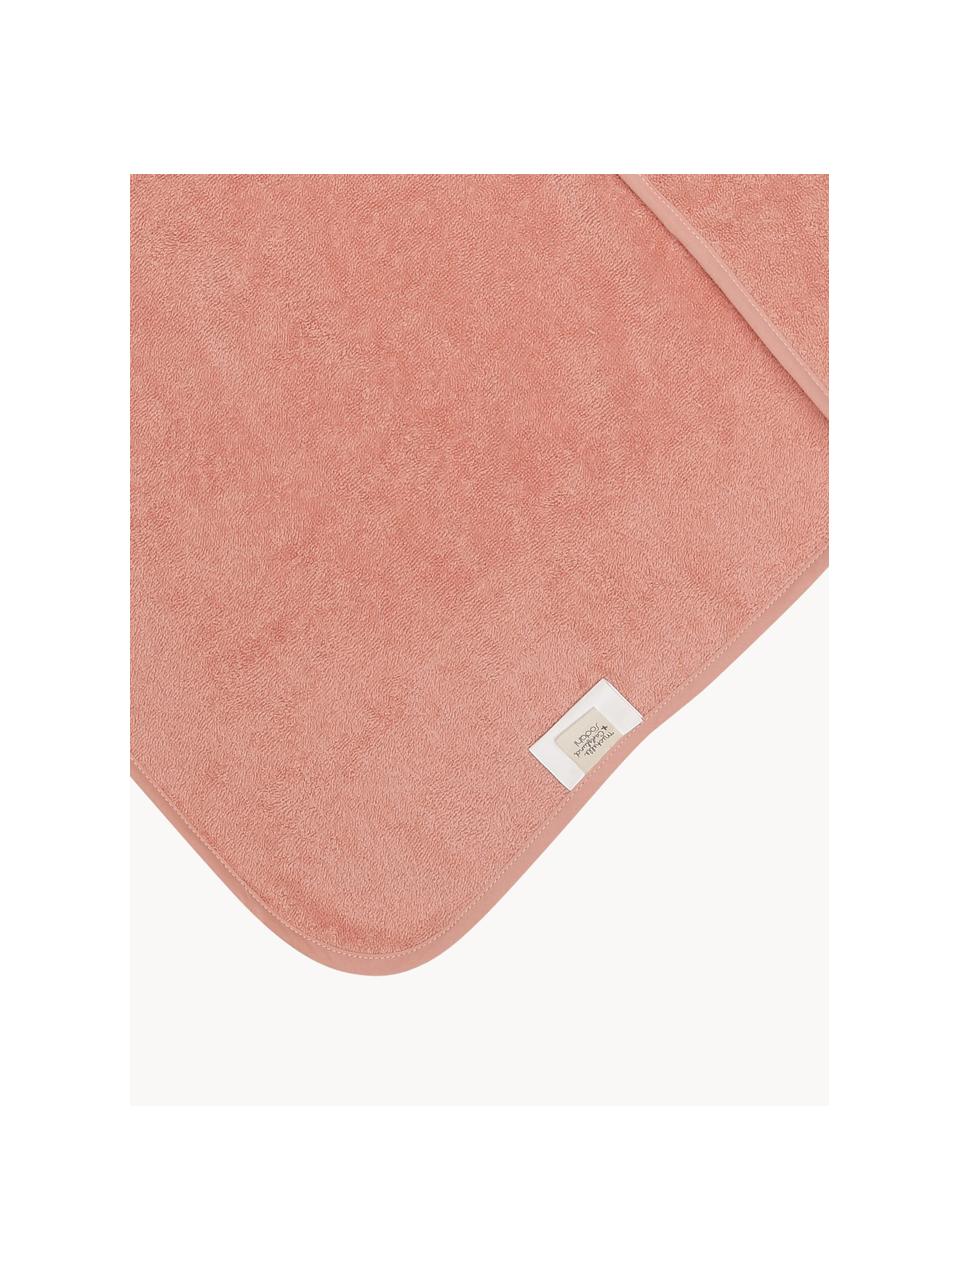 Toalla capa de algodón Fox, 100% algodón ecológico, Rojo coral, An 80 x L 80 cm